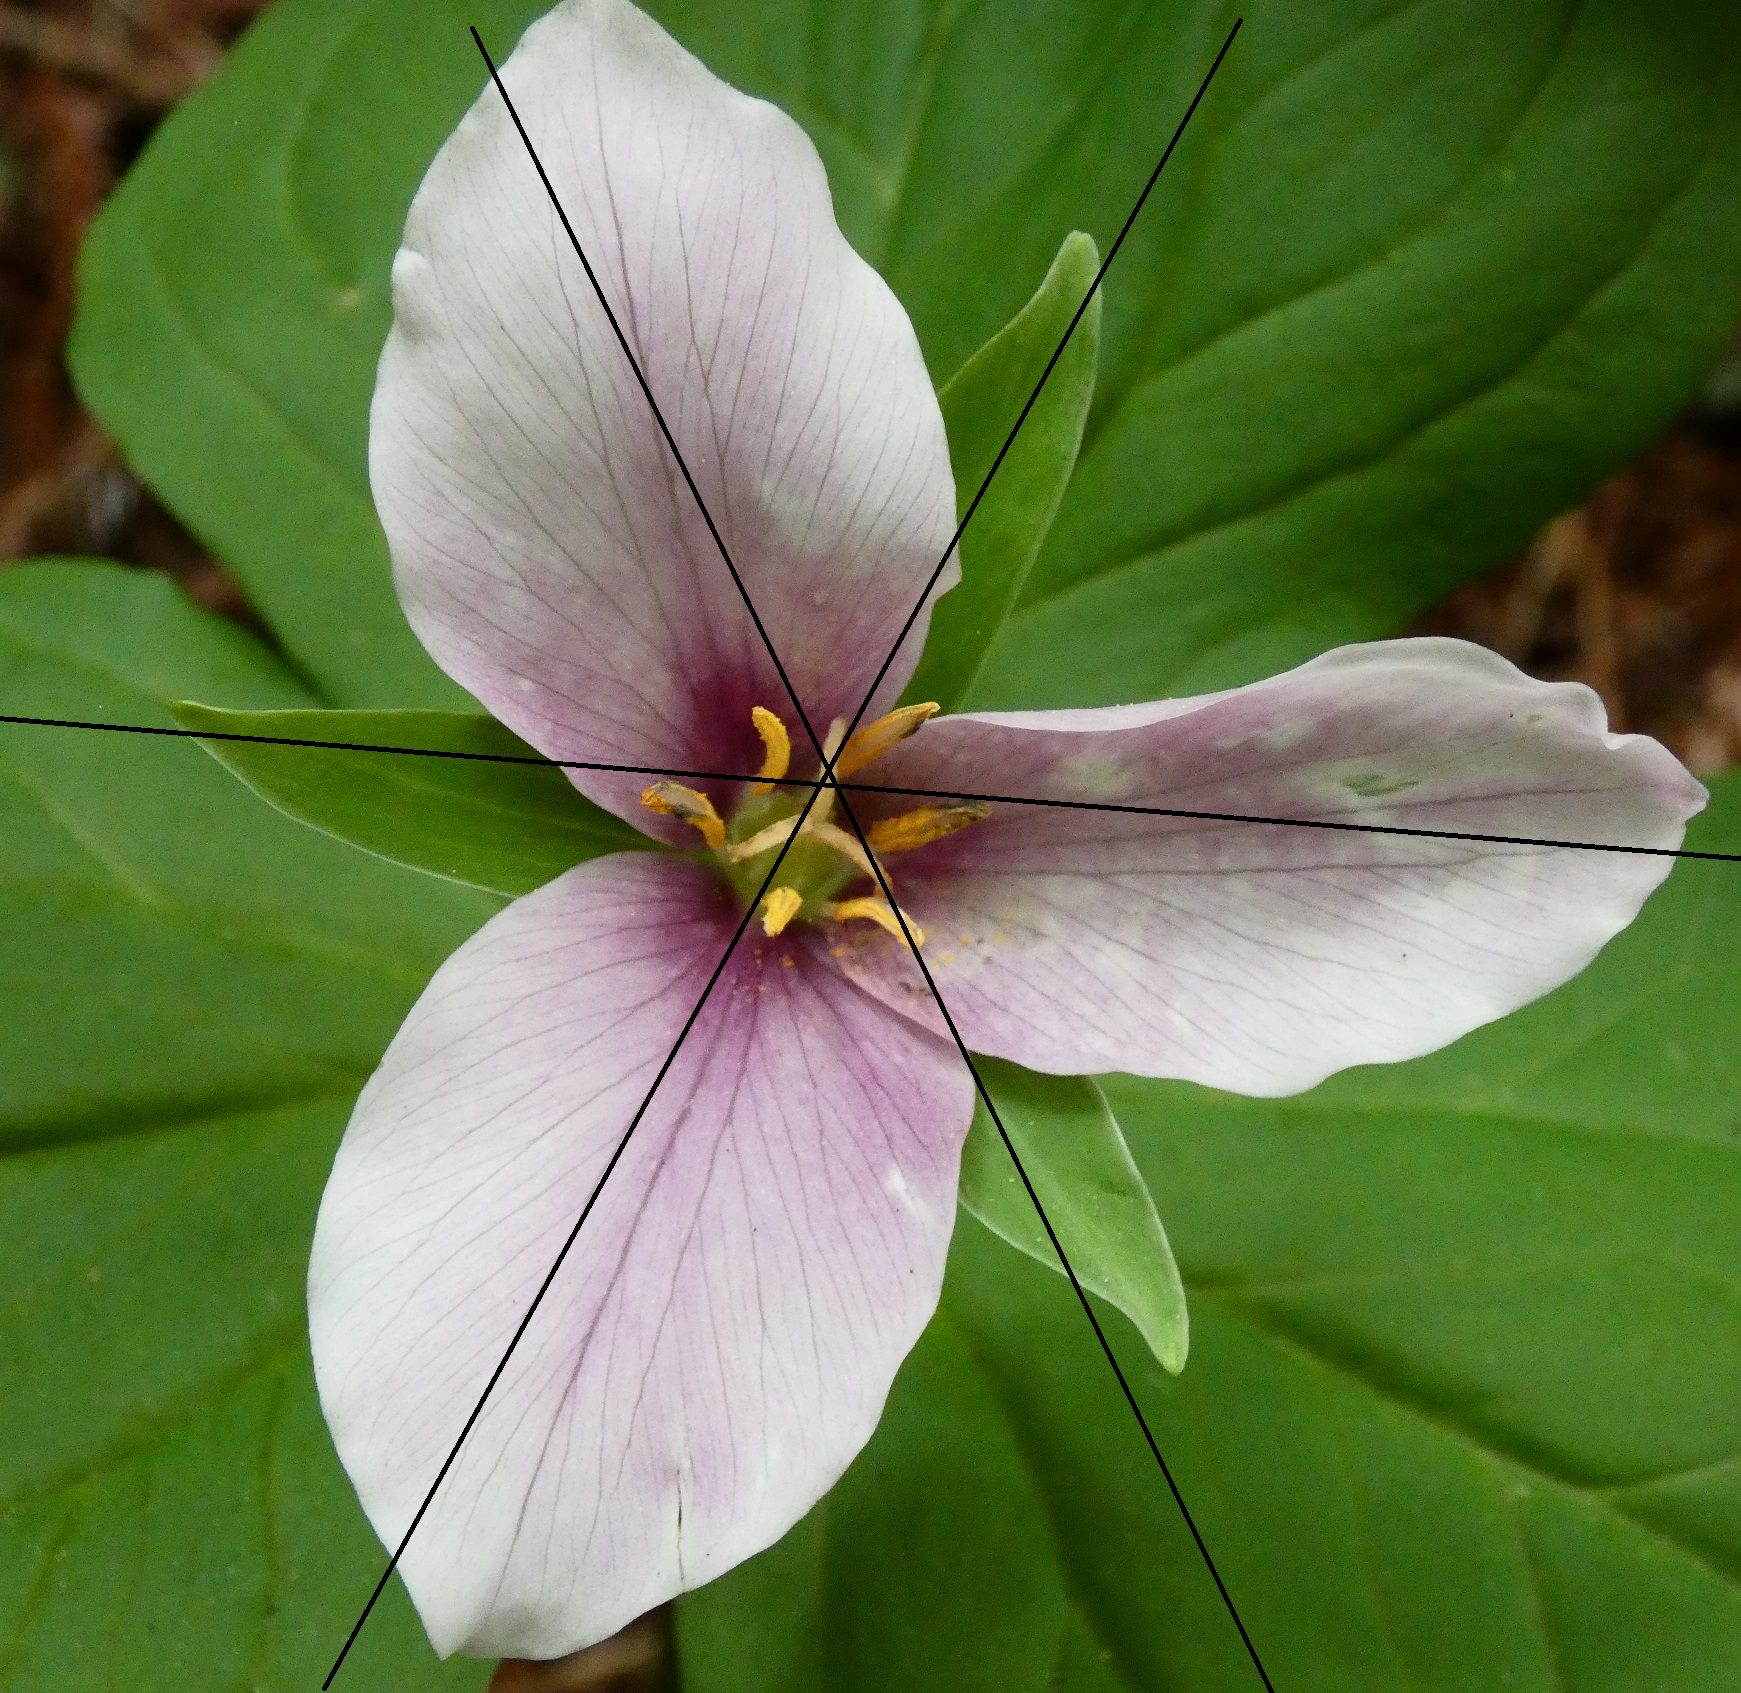 La misma flor de Trillium con tres líneas de simetría dibujadas en